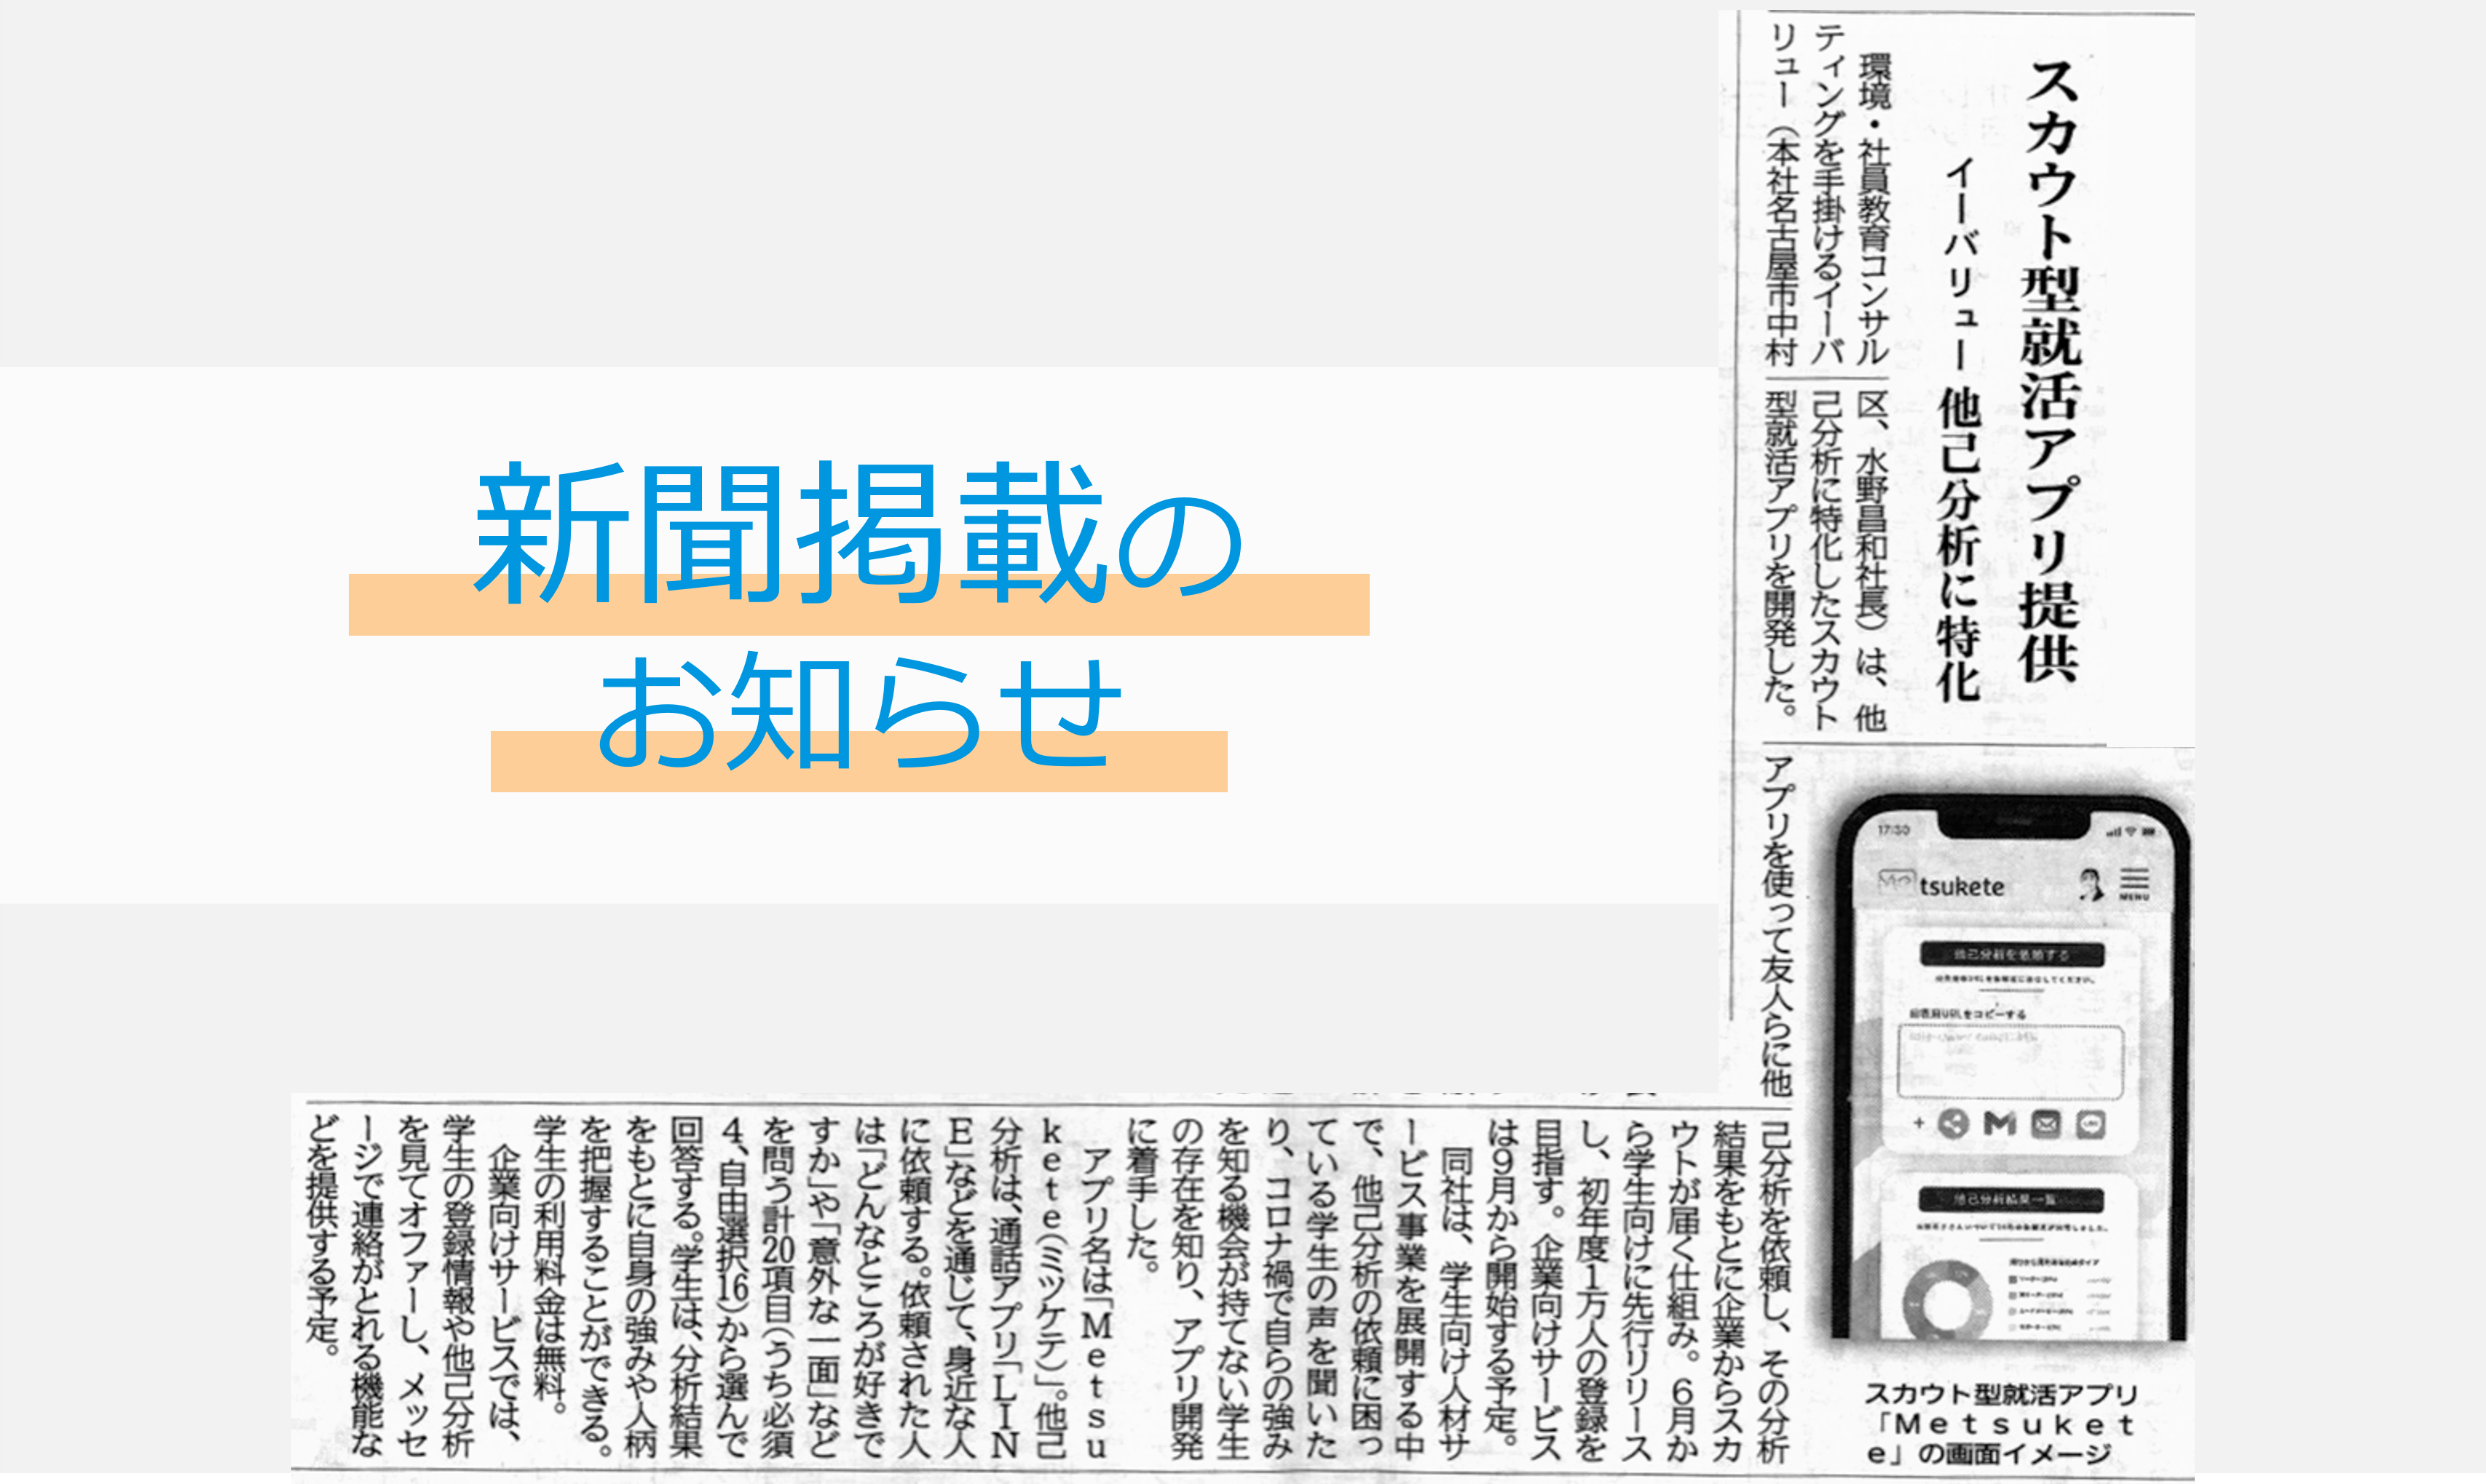 中部経済新聞にて、弊社のスカウト型就活アプリ「Metsukete（ミツケテ）」が紹介されました